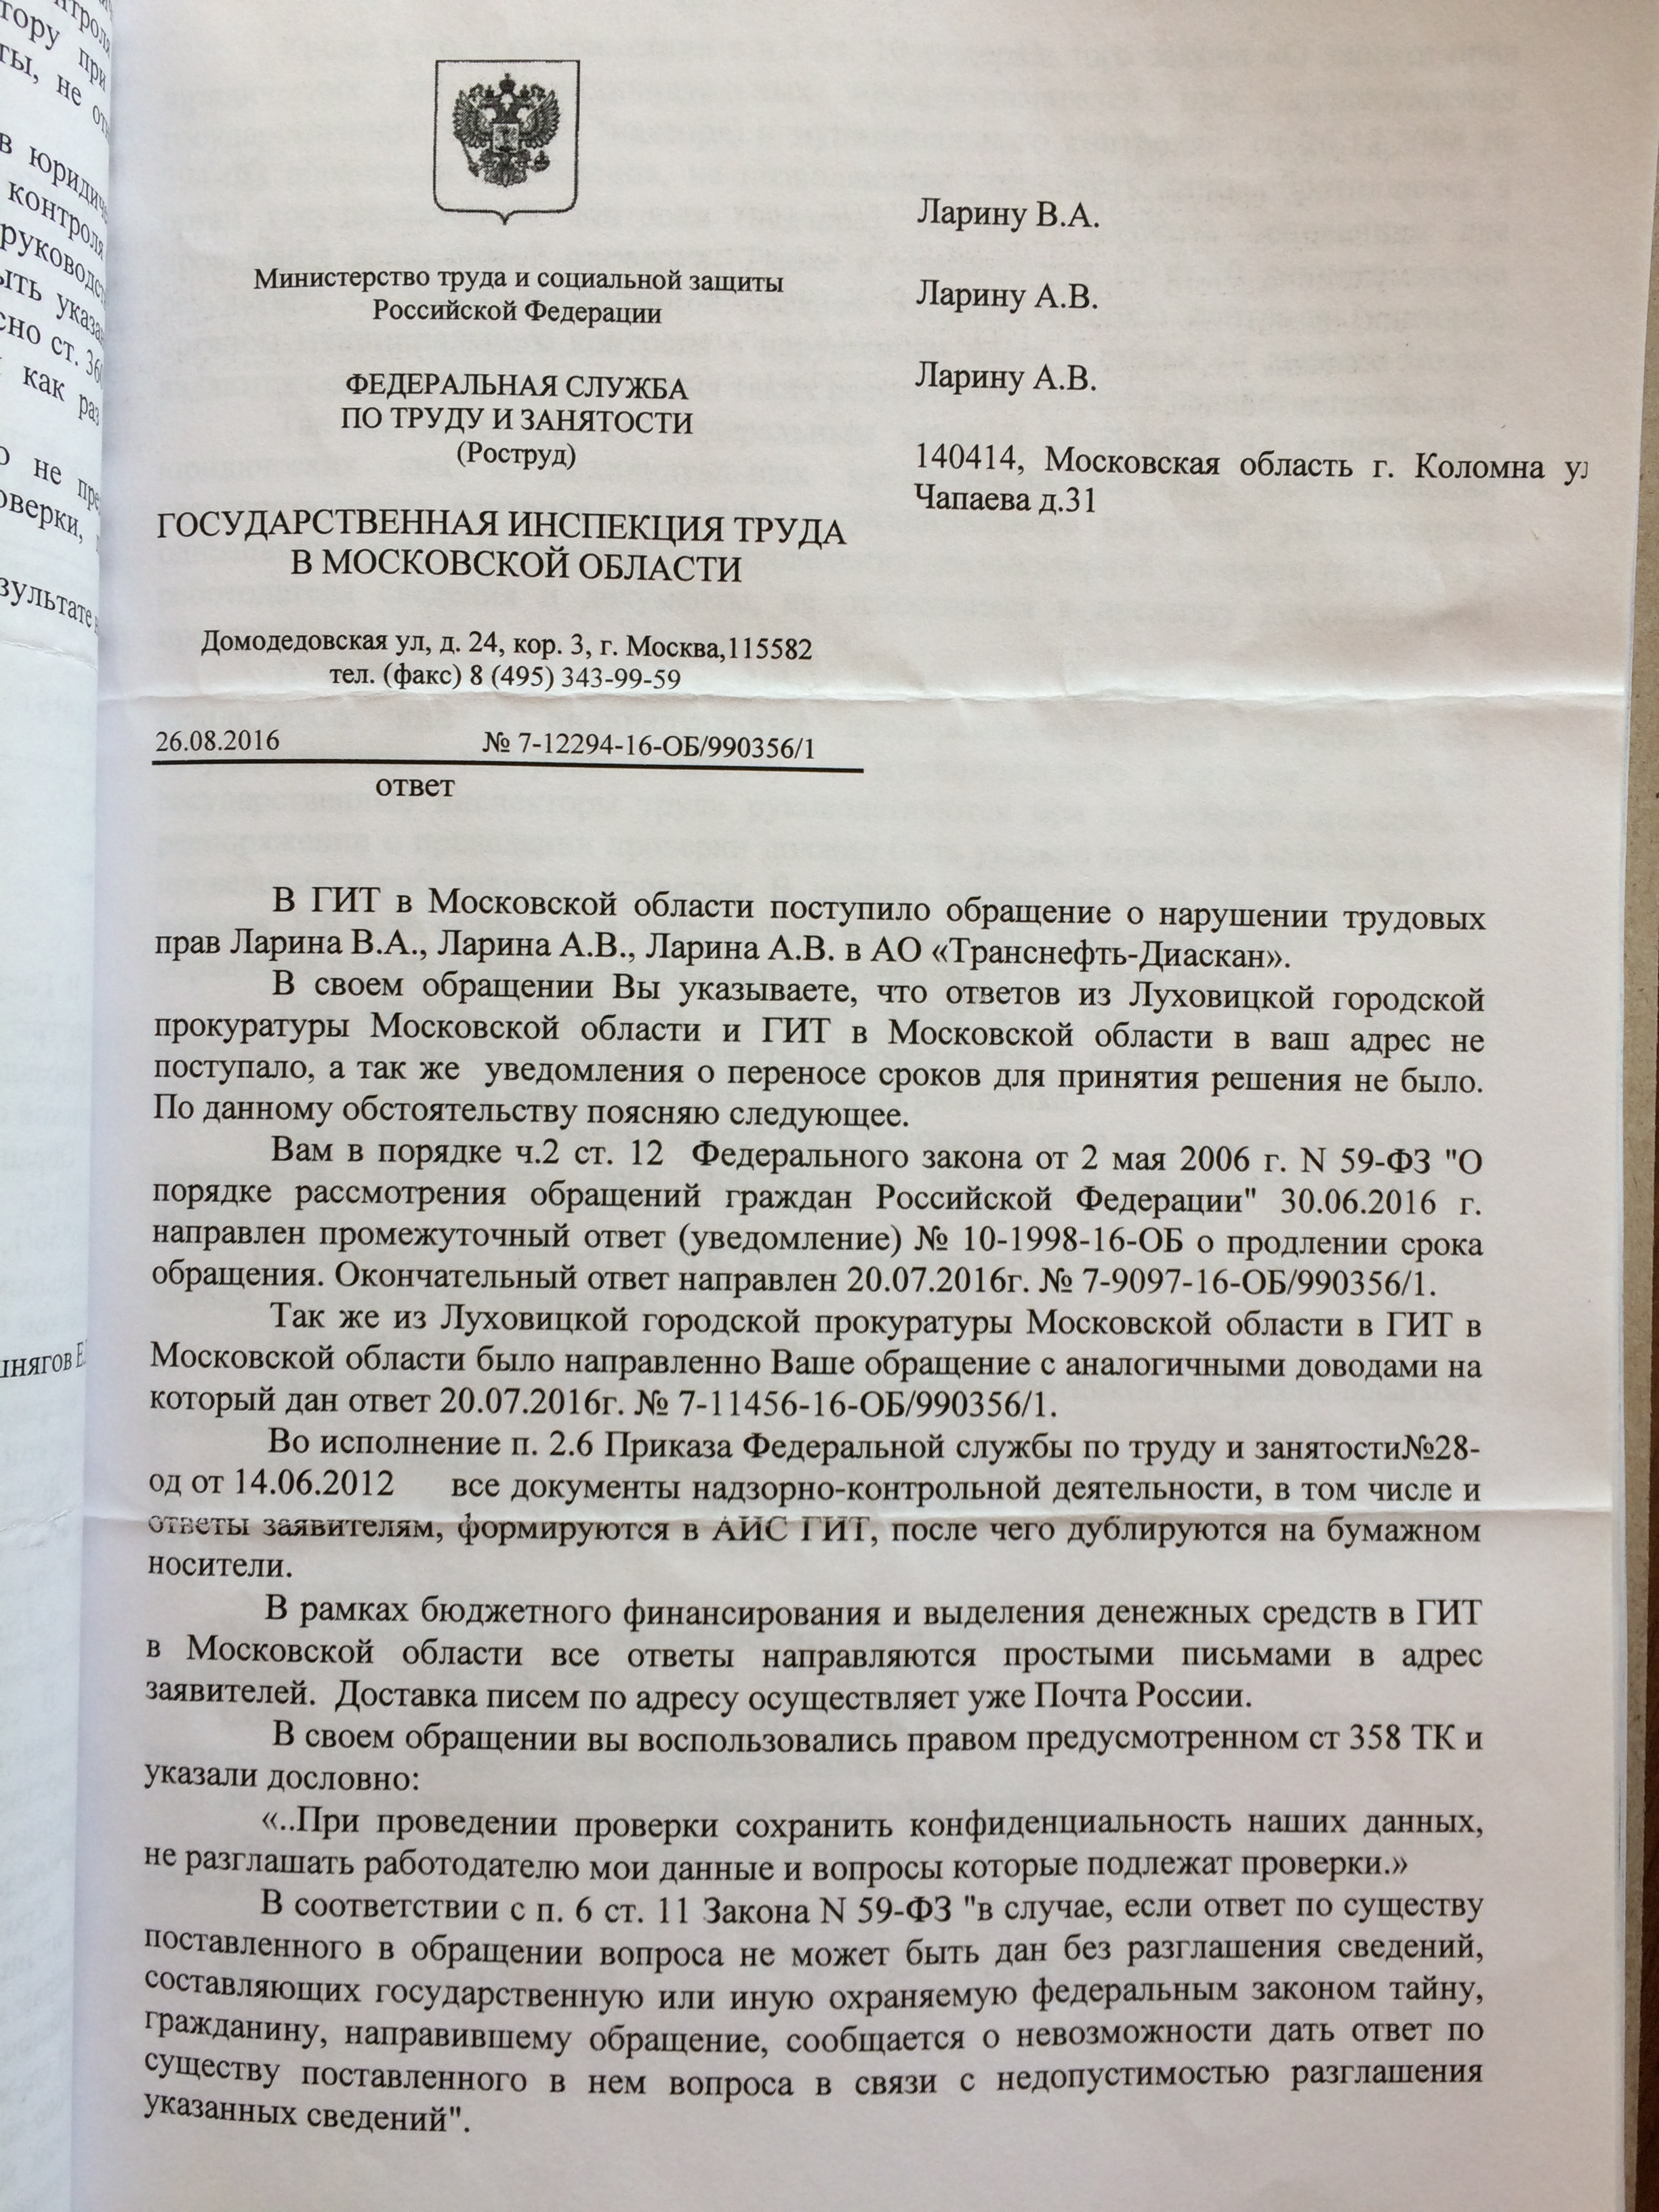 Фото документов проверки Луховицкой городской прокуратурой - 10 (5)